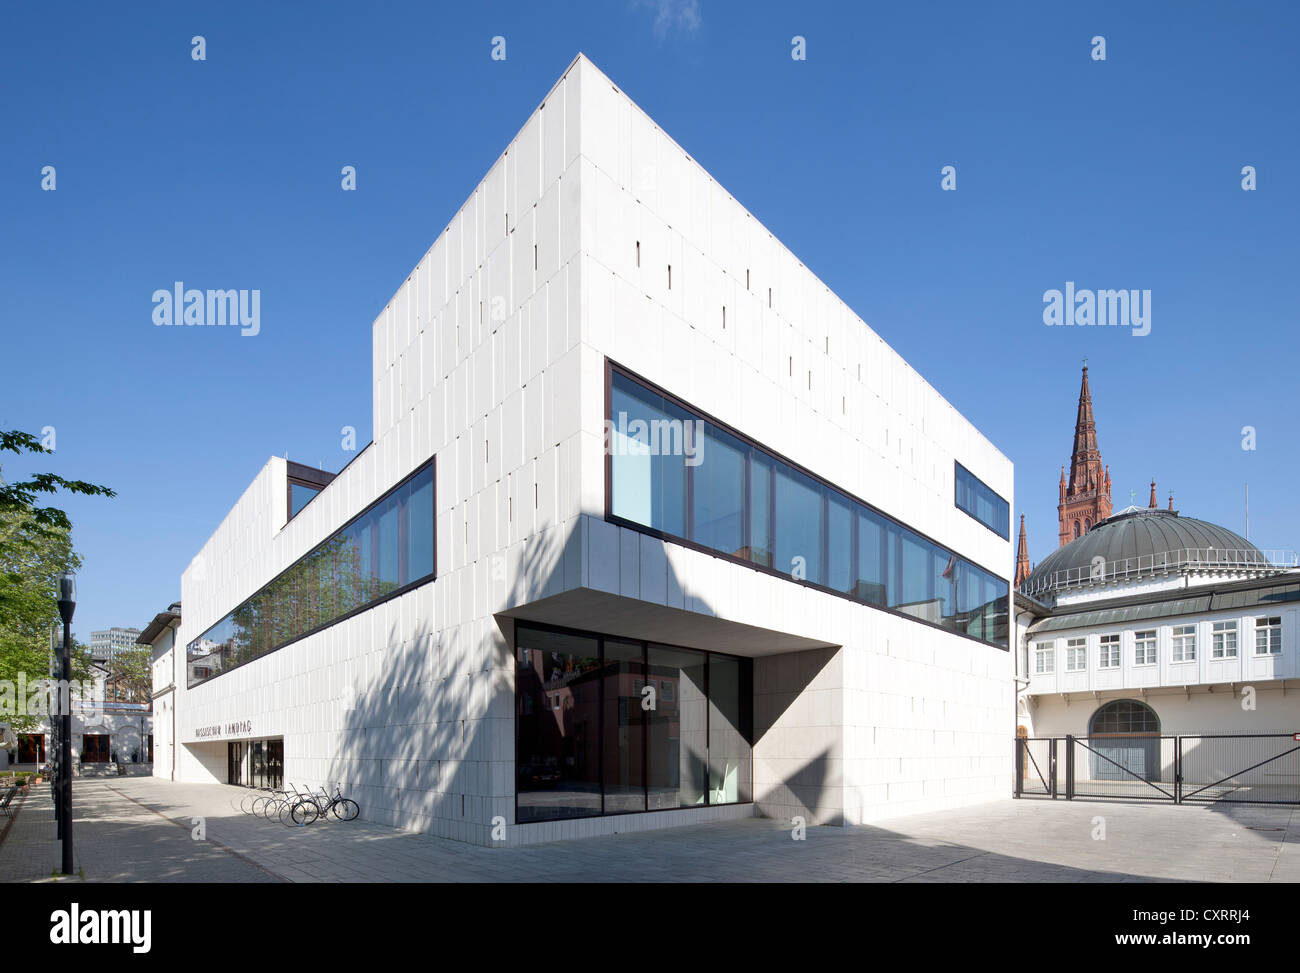 Le Parlement de l'état de Hesse, le parlement, l'annexe avec chambre, Wiesbaden, Hesse, Germany, Europe, PublicGround Banque D'Images